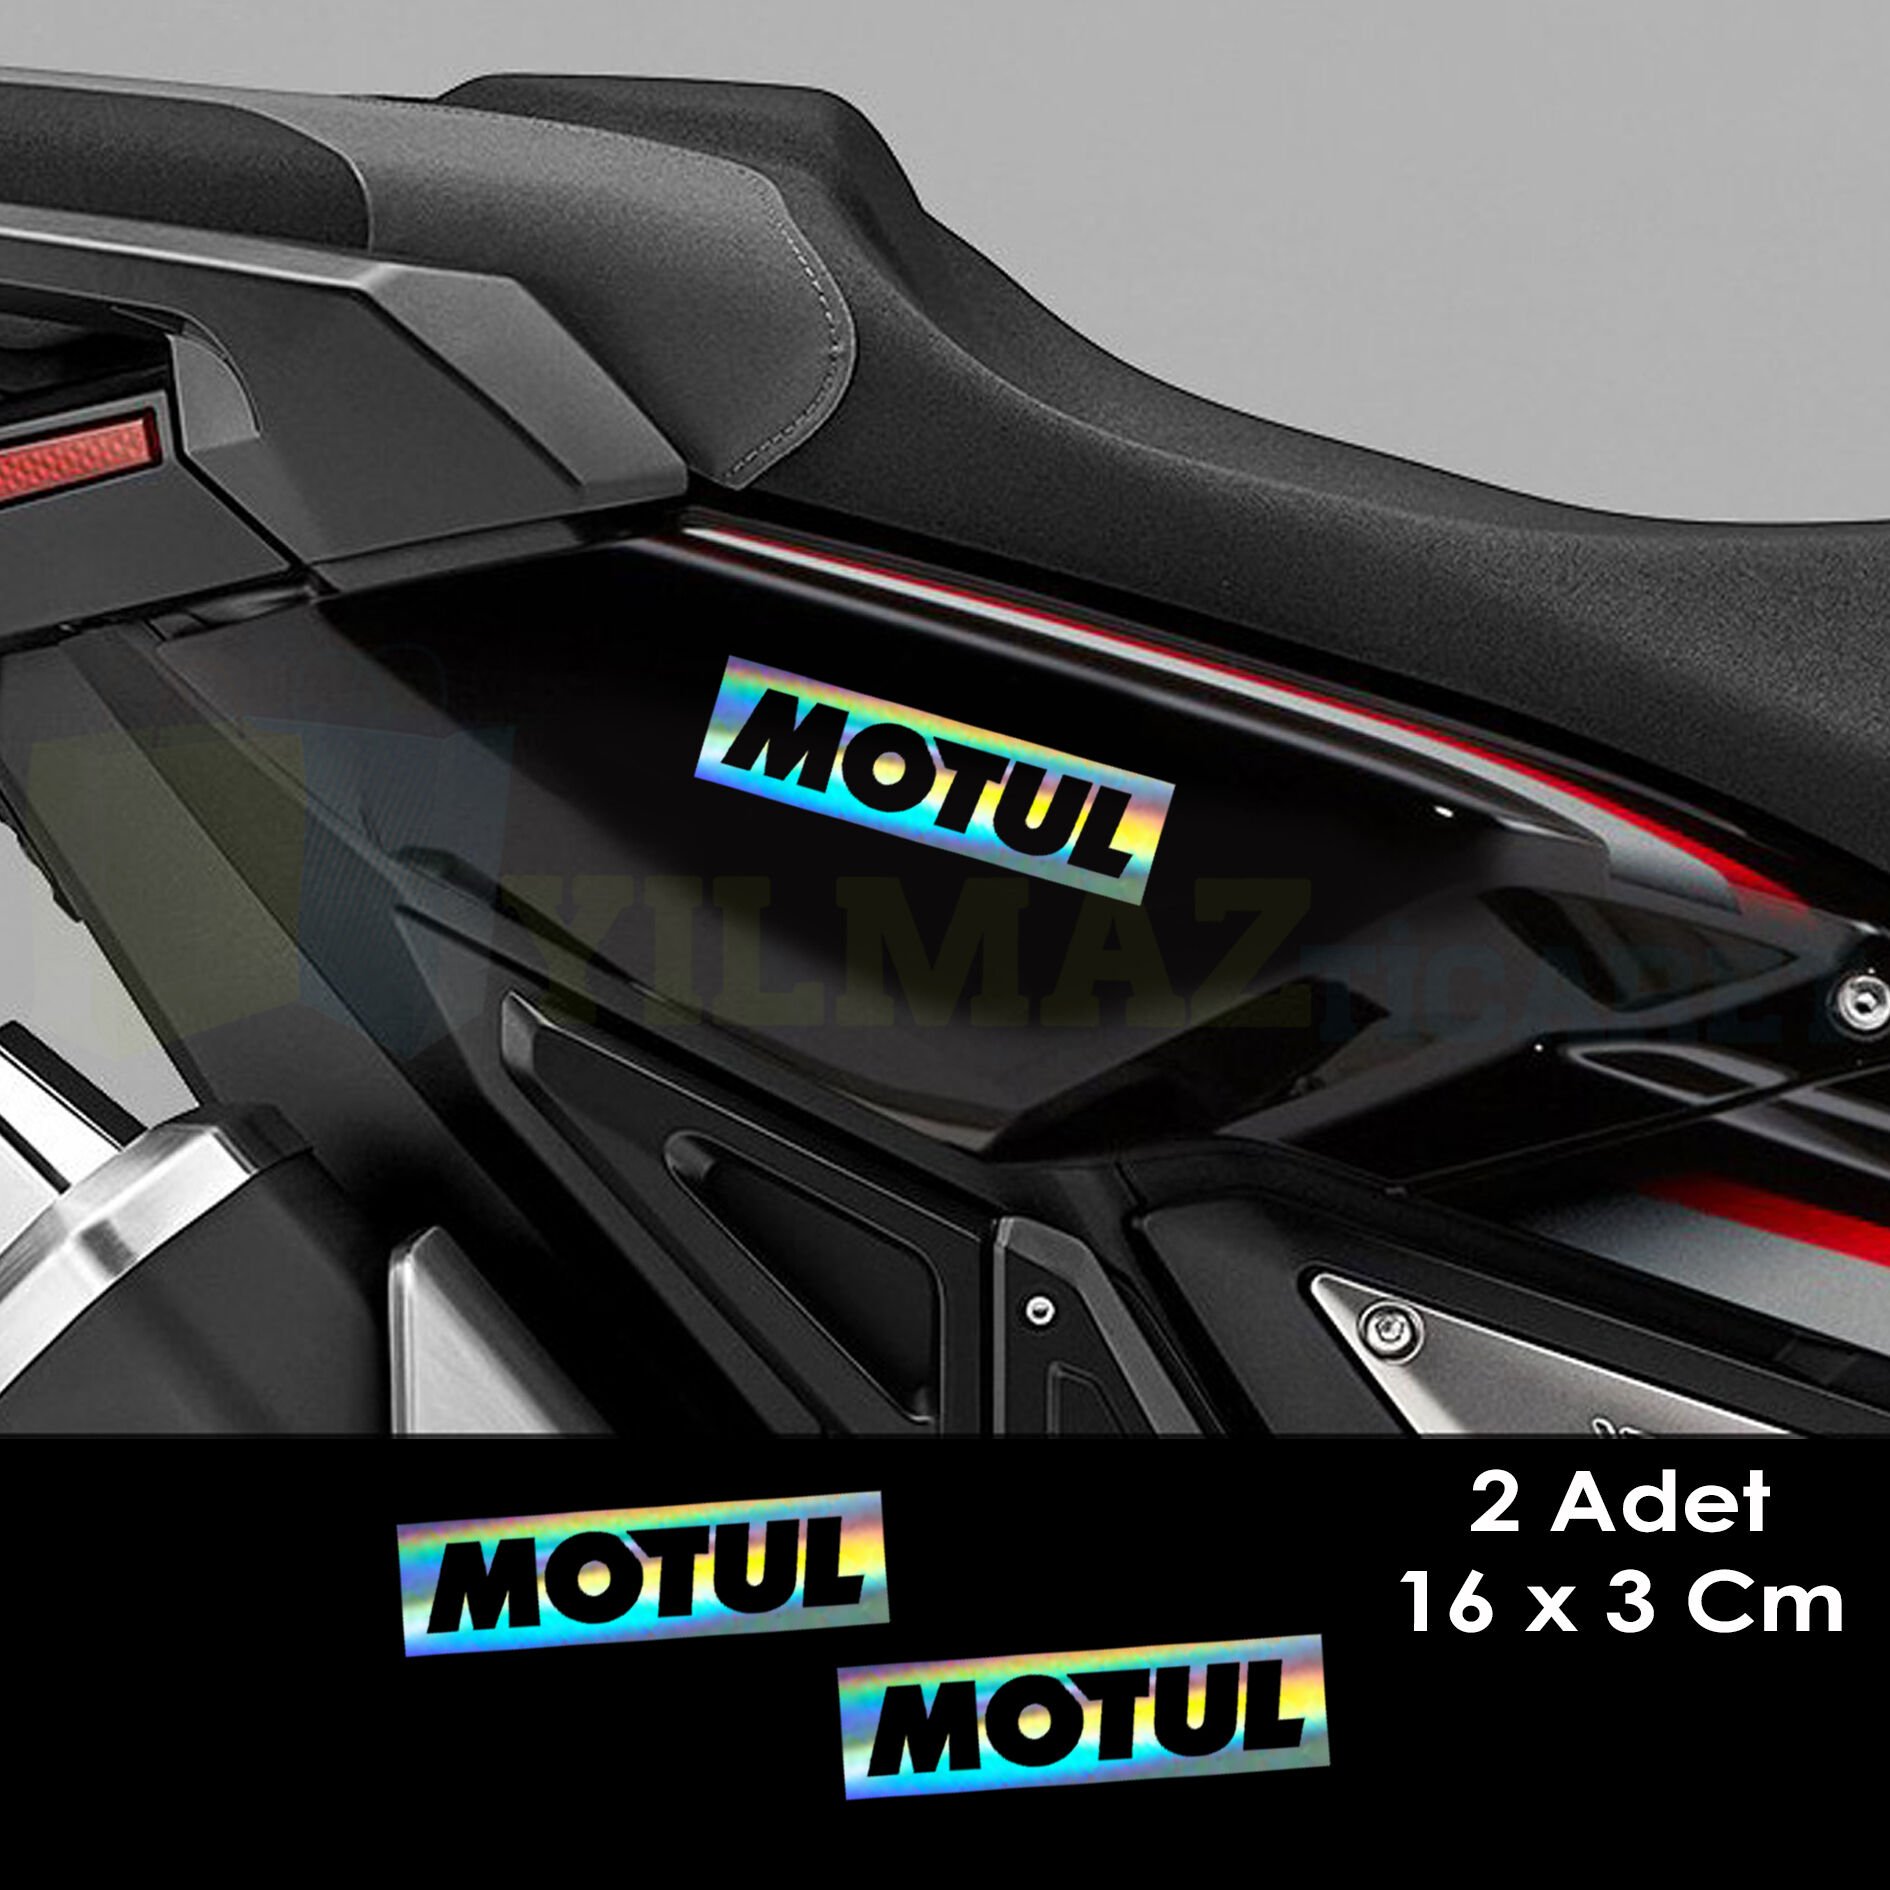 Motul Hologram Oto Sticker Motosiklet Cam Araba Yapıştırma Çıkartma Aksesuar Modifiye Etiket 16x3 Cm